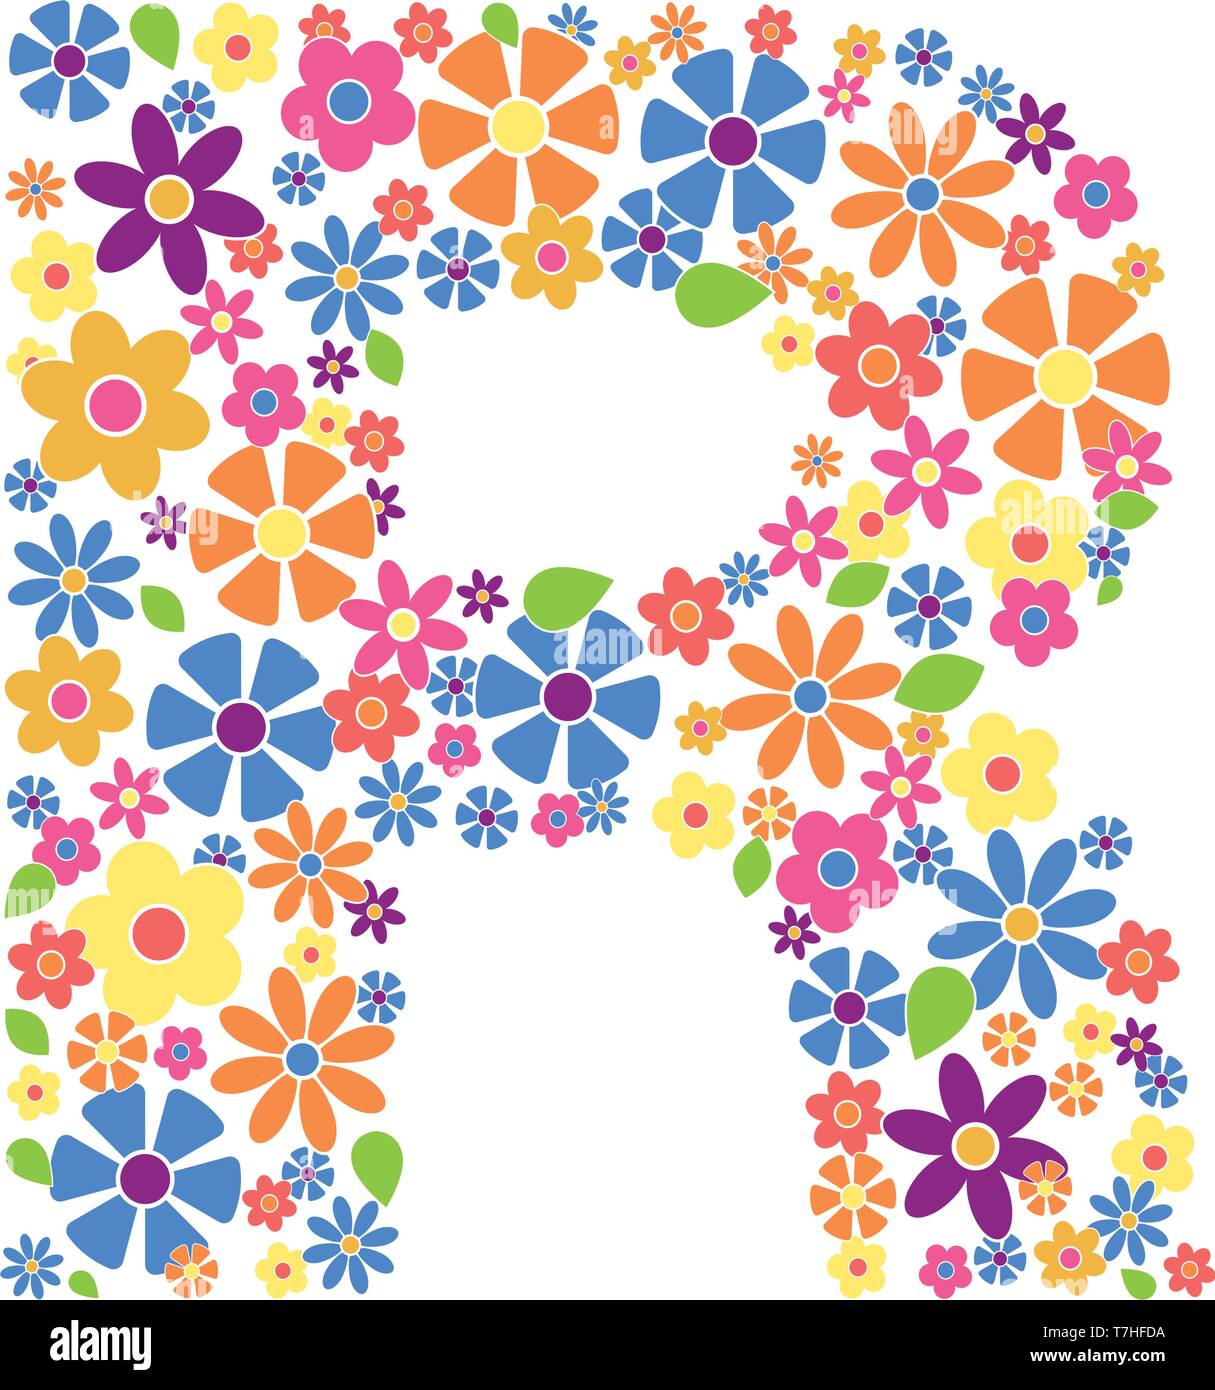 Buchstabe R gefüllt mit einer Vielzahl von bunten Blumen auf weißem Hintergrund Vektor-illustration isoliert Stock Vektor